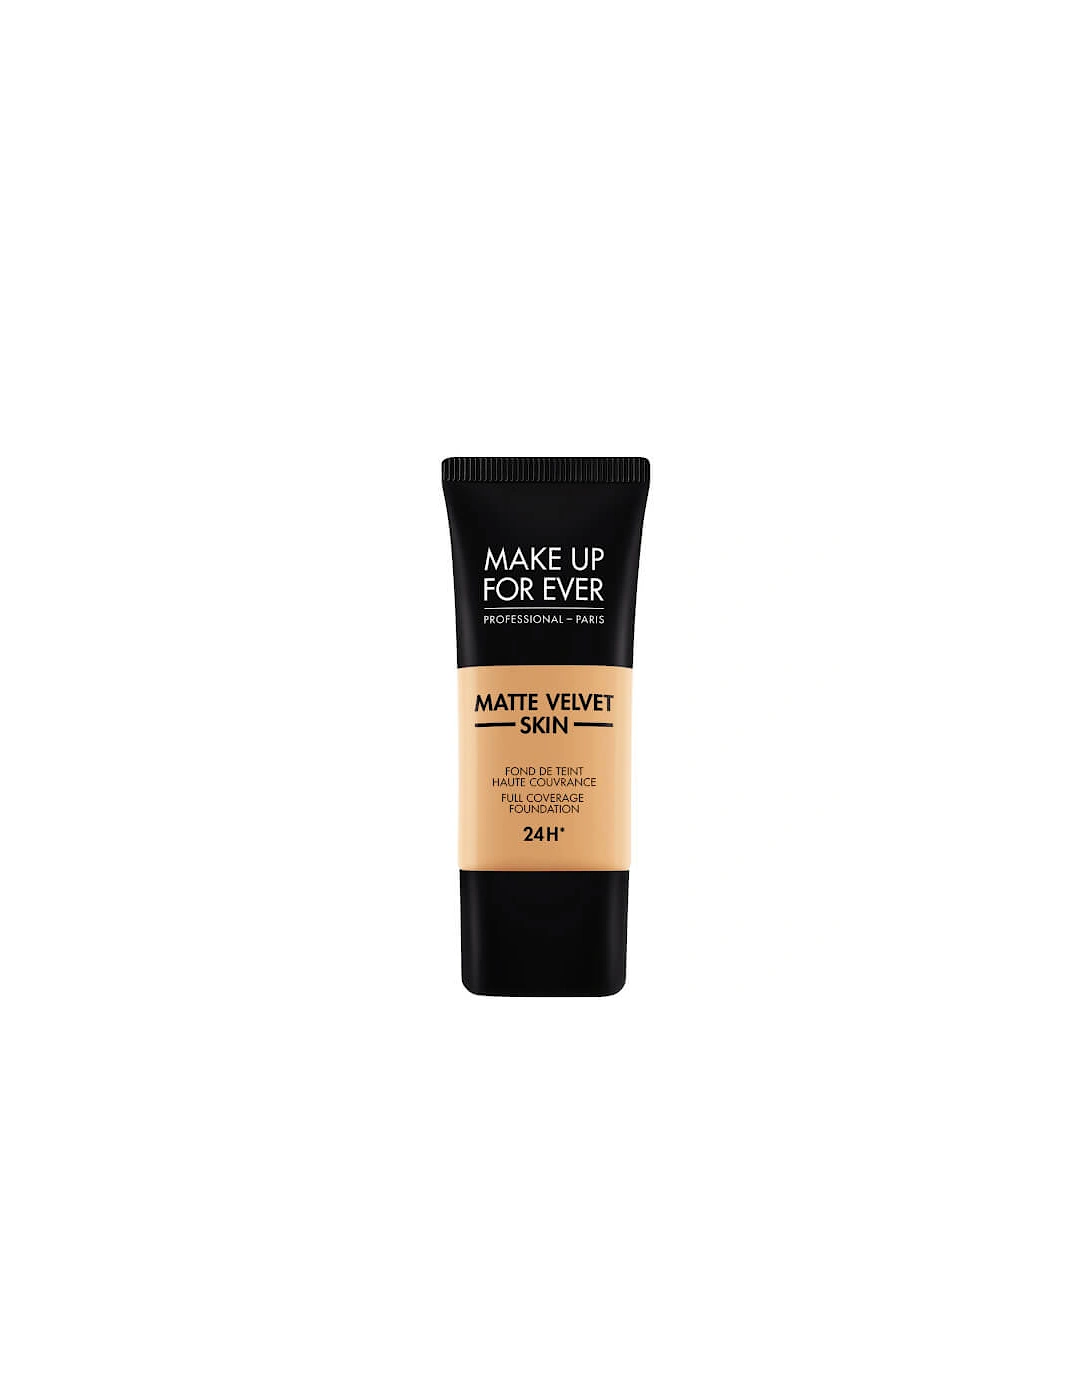 Matte Velvet Skin Foundation - 375 Golden sand, 2 of 1